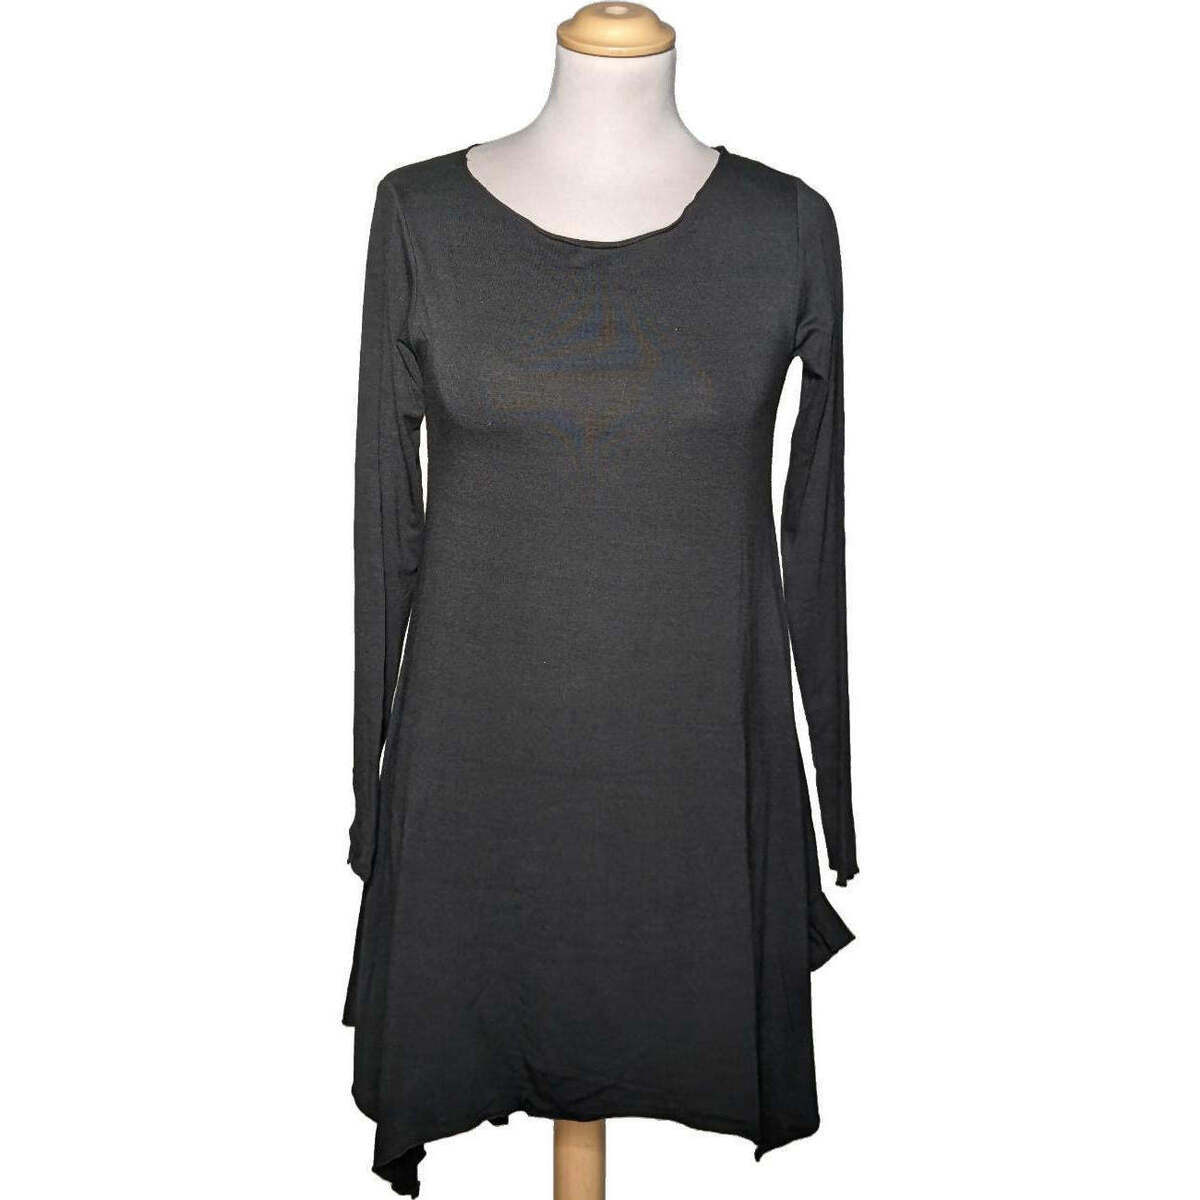 Vêtements Femme Robes courtes La City robe courte  36 - T1 - S Noir Noir